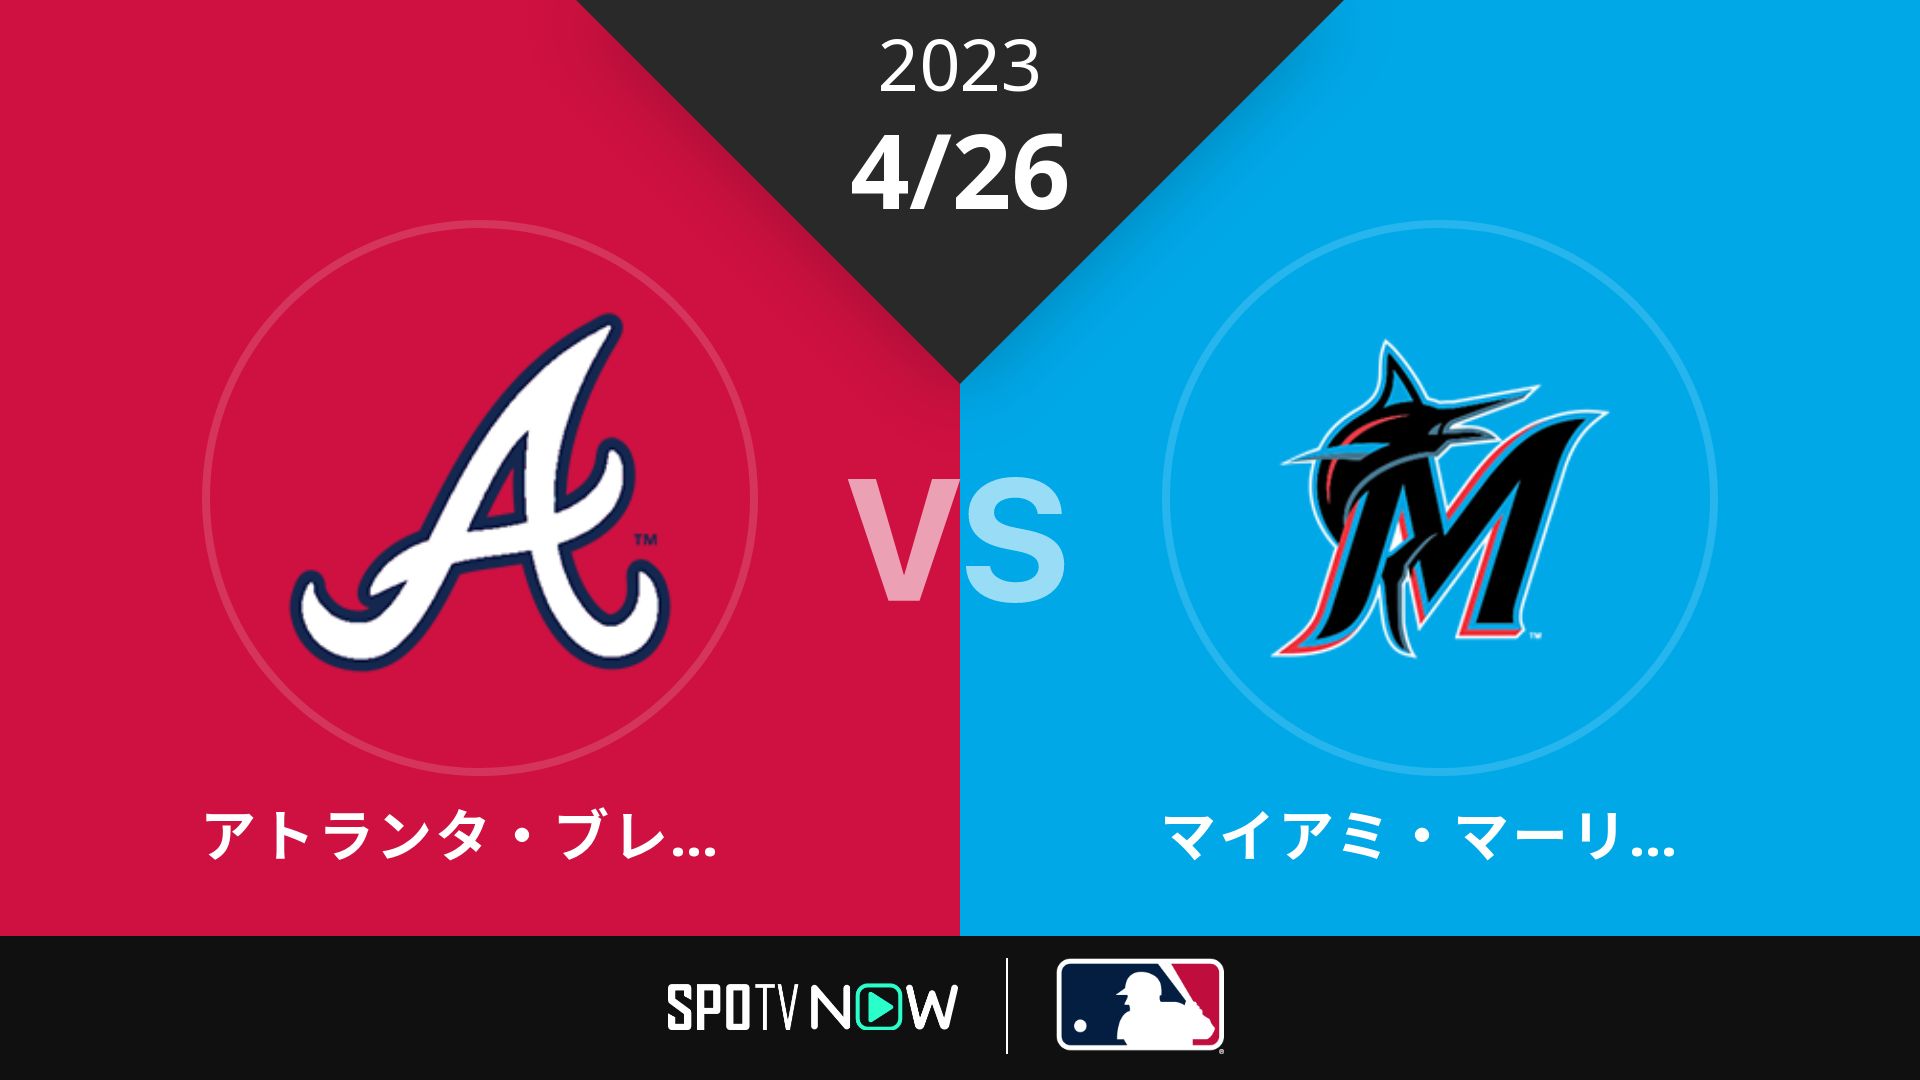 2023/4/26 ブレーブス vs マーリンズ [MLB]